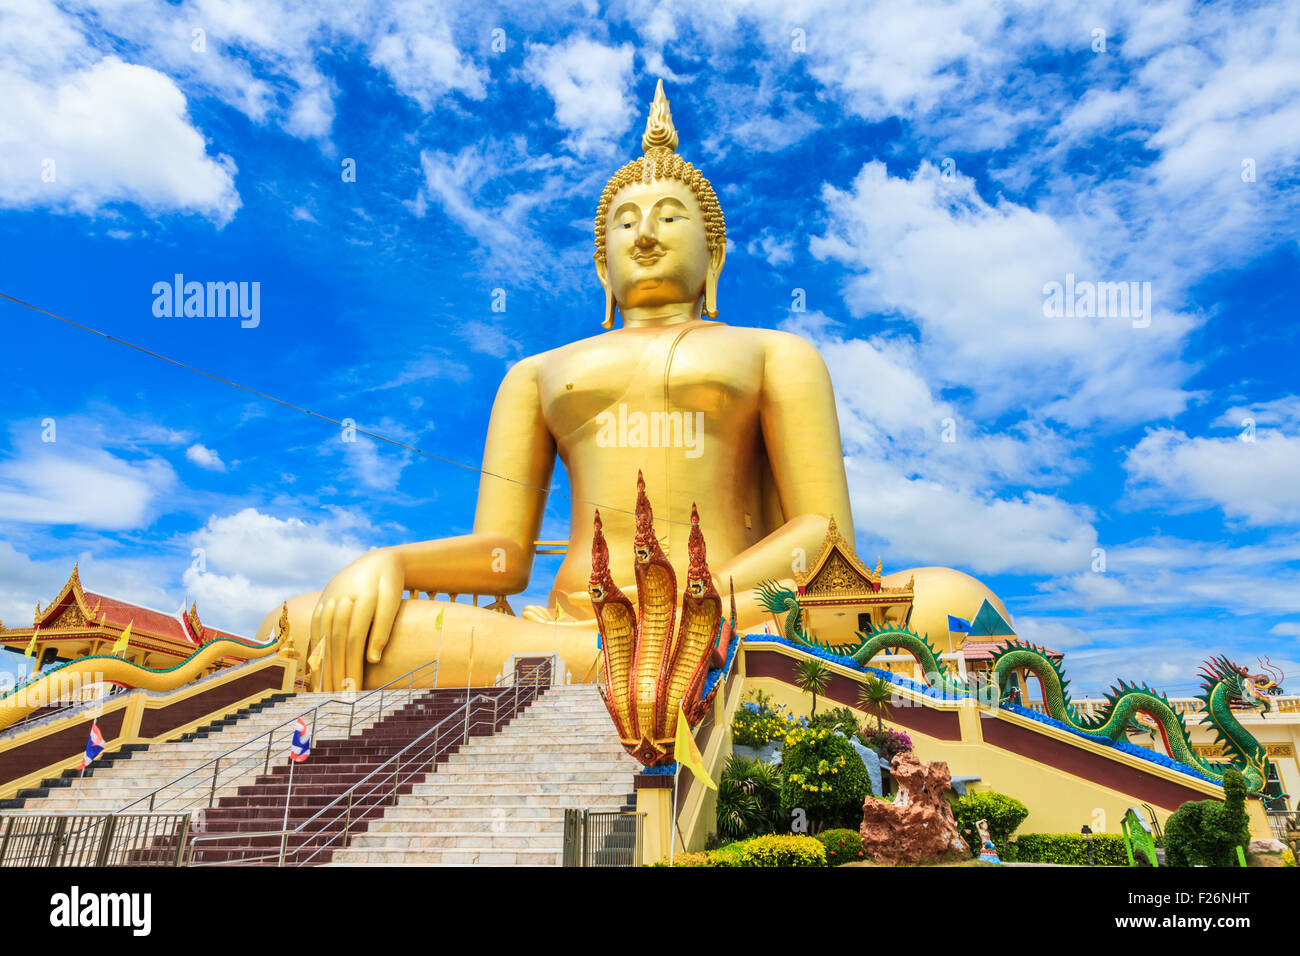 Die Biiggest sitzende Buddha-Statue in Thailand Stockfoto